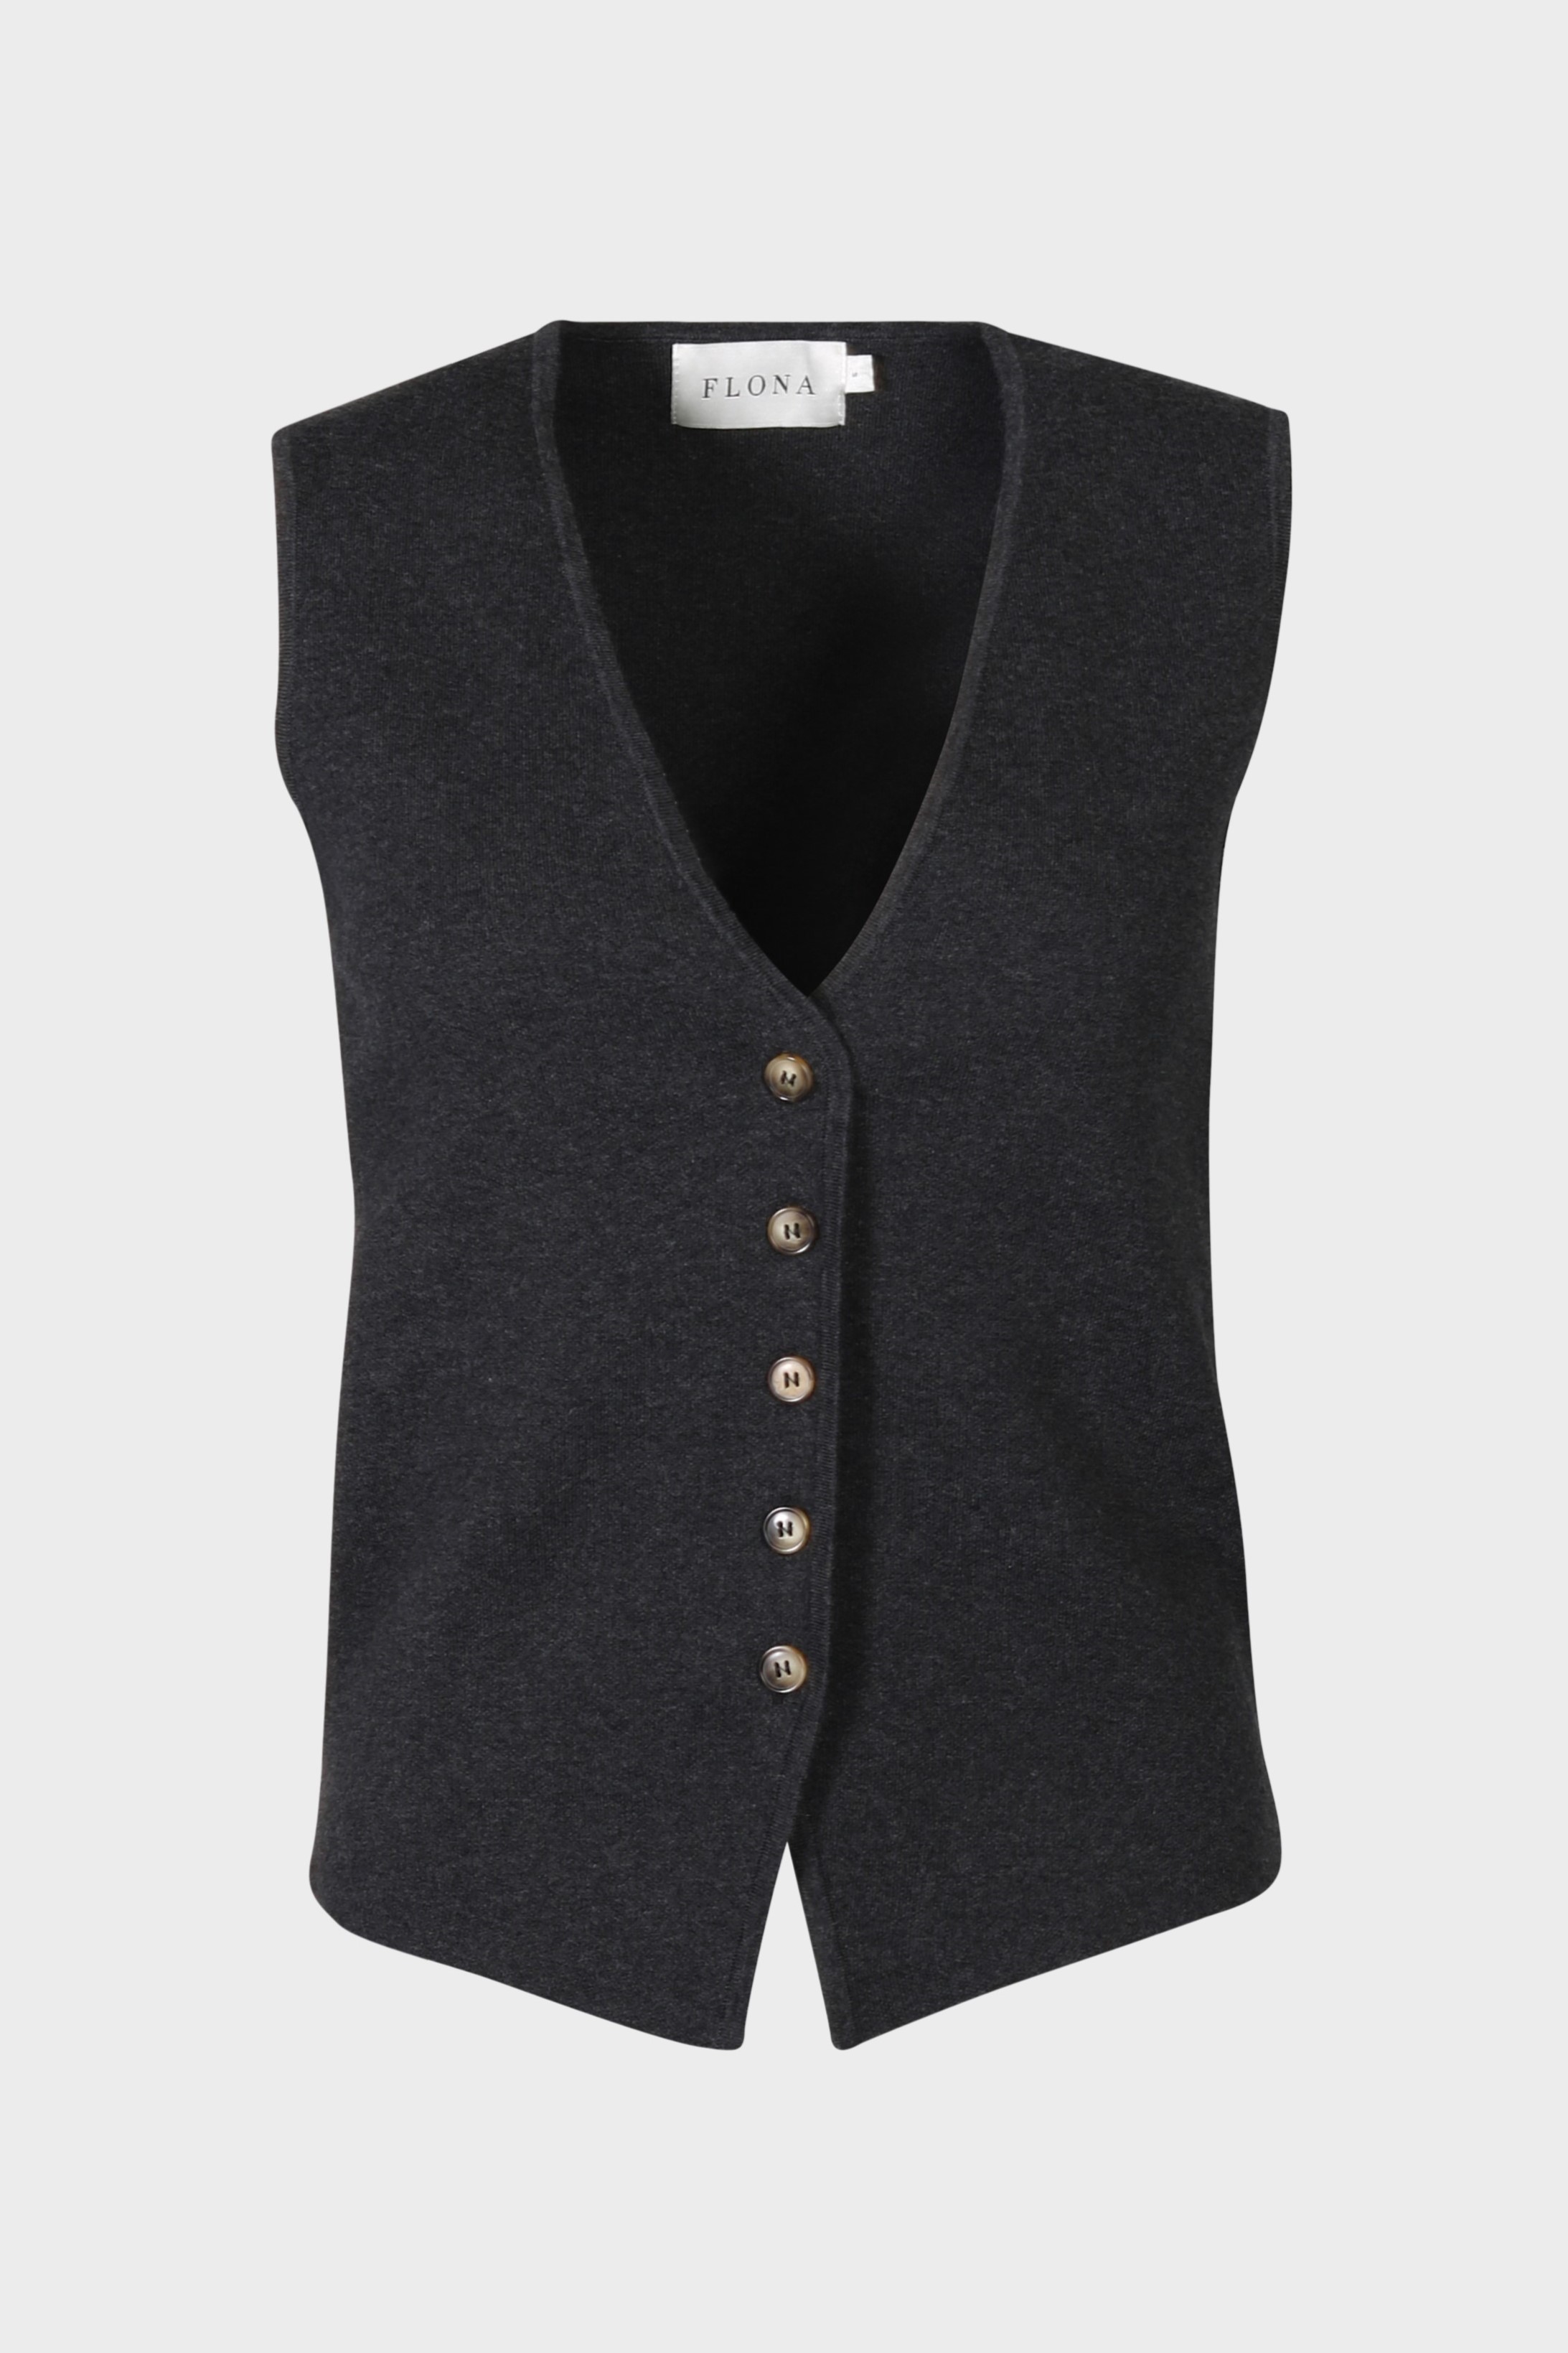 FLONA Cotton/ Cashmere Knit Vest in Dark Grey XL